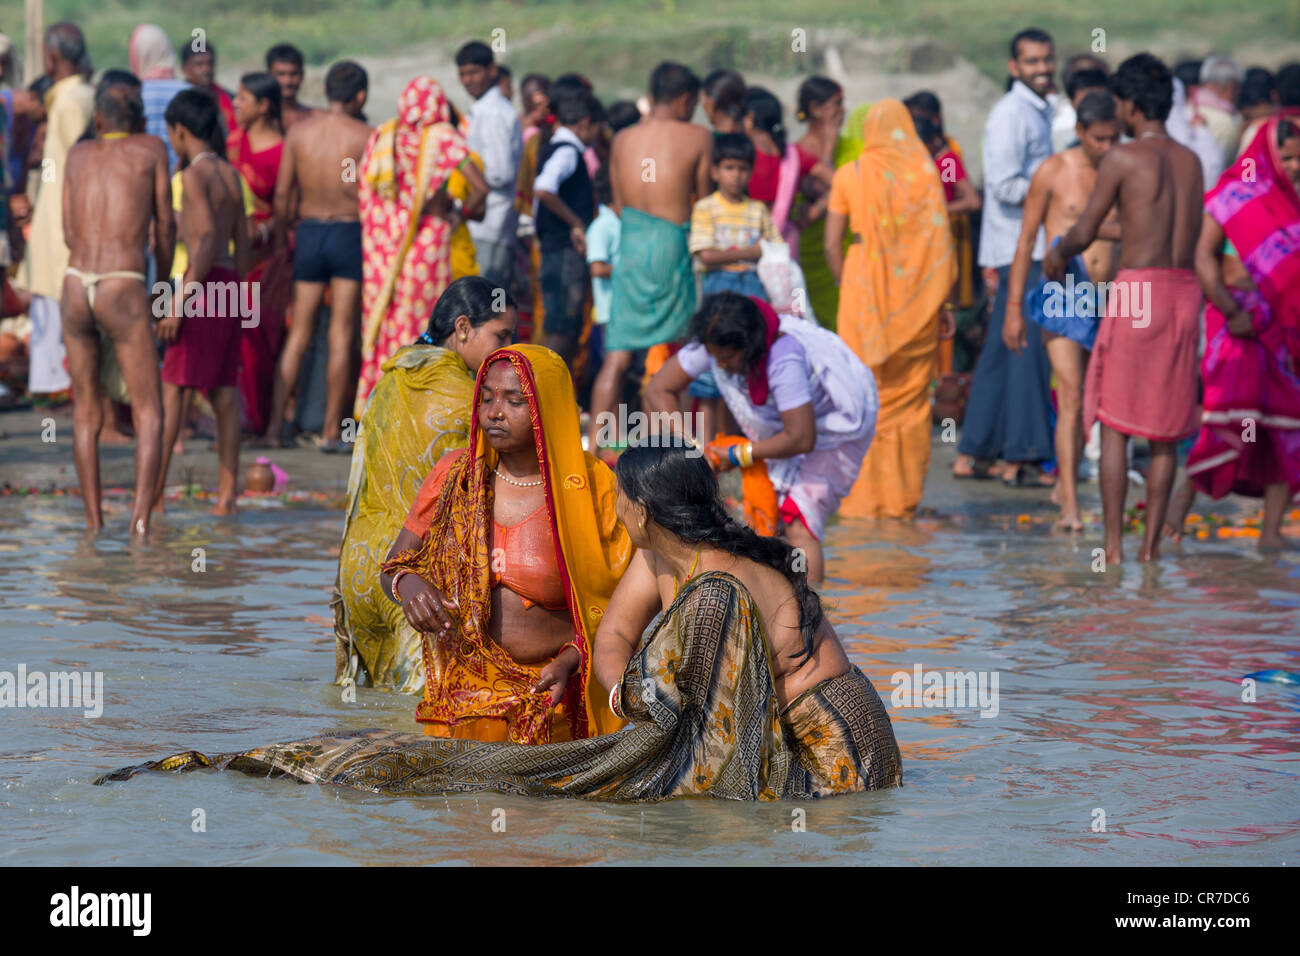 Les femmes baignade à la confluence des rivières Gange et Gandak, Sonepur Mela, Sonepur, Bihar, Inde Banque D'Images